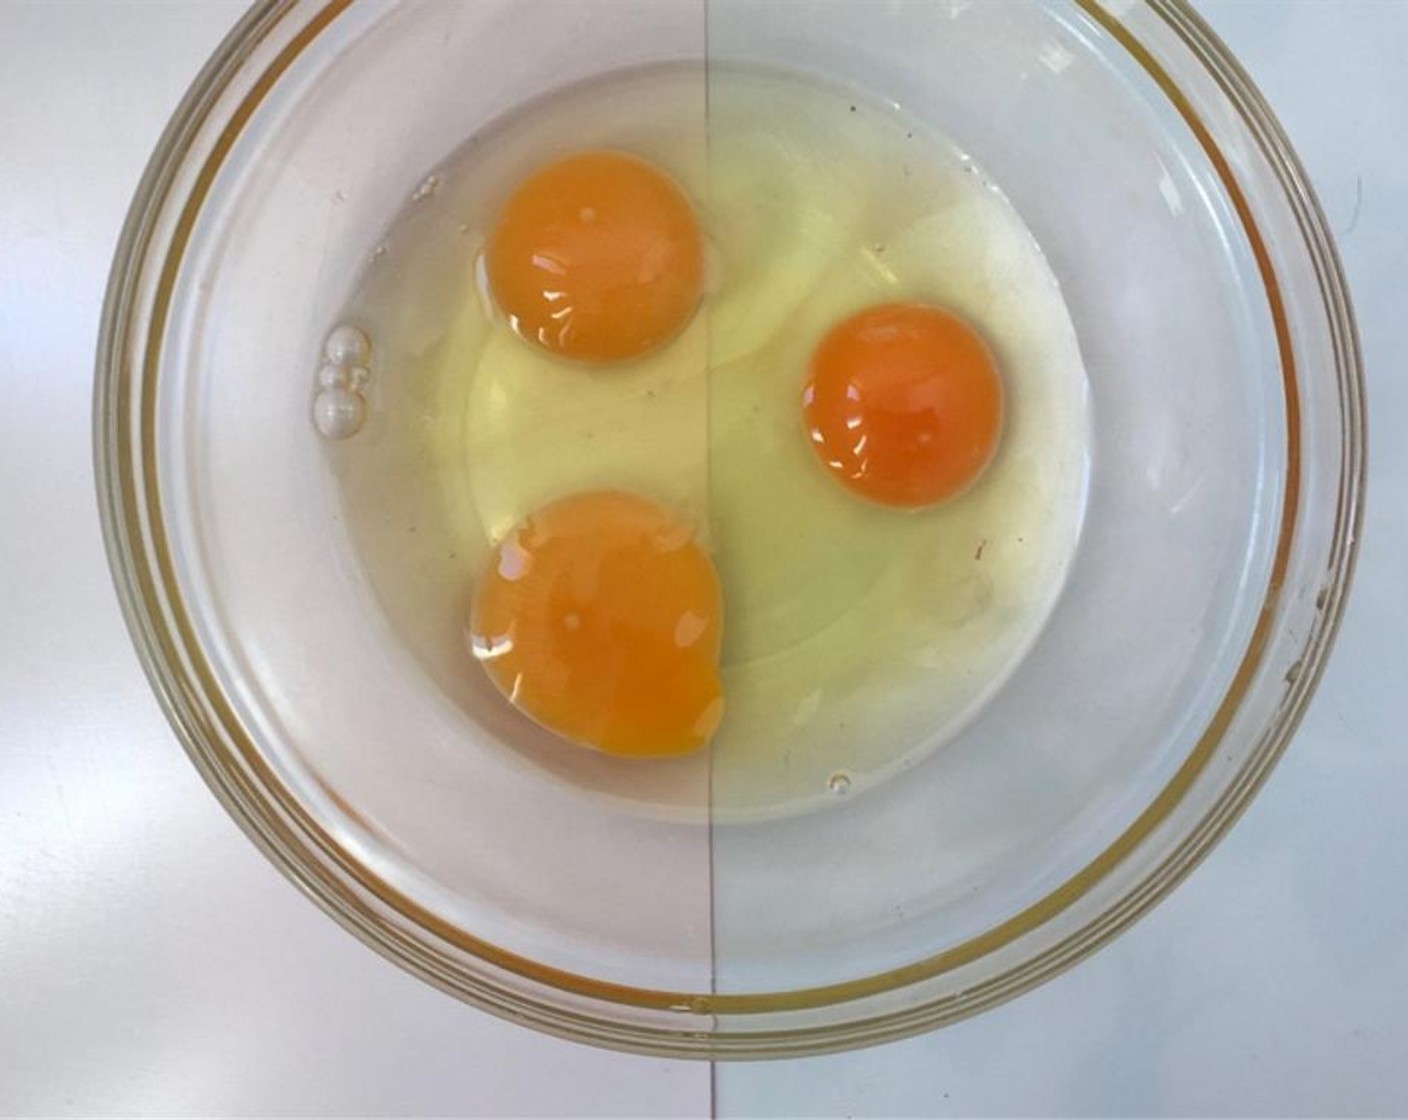 Schritt 1 Ofen auf 200 °C vorheizen. 
Ganze Eier (3) in eine grosse Rührschüssel geben.